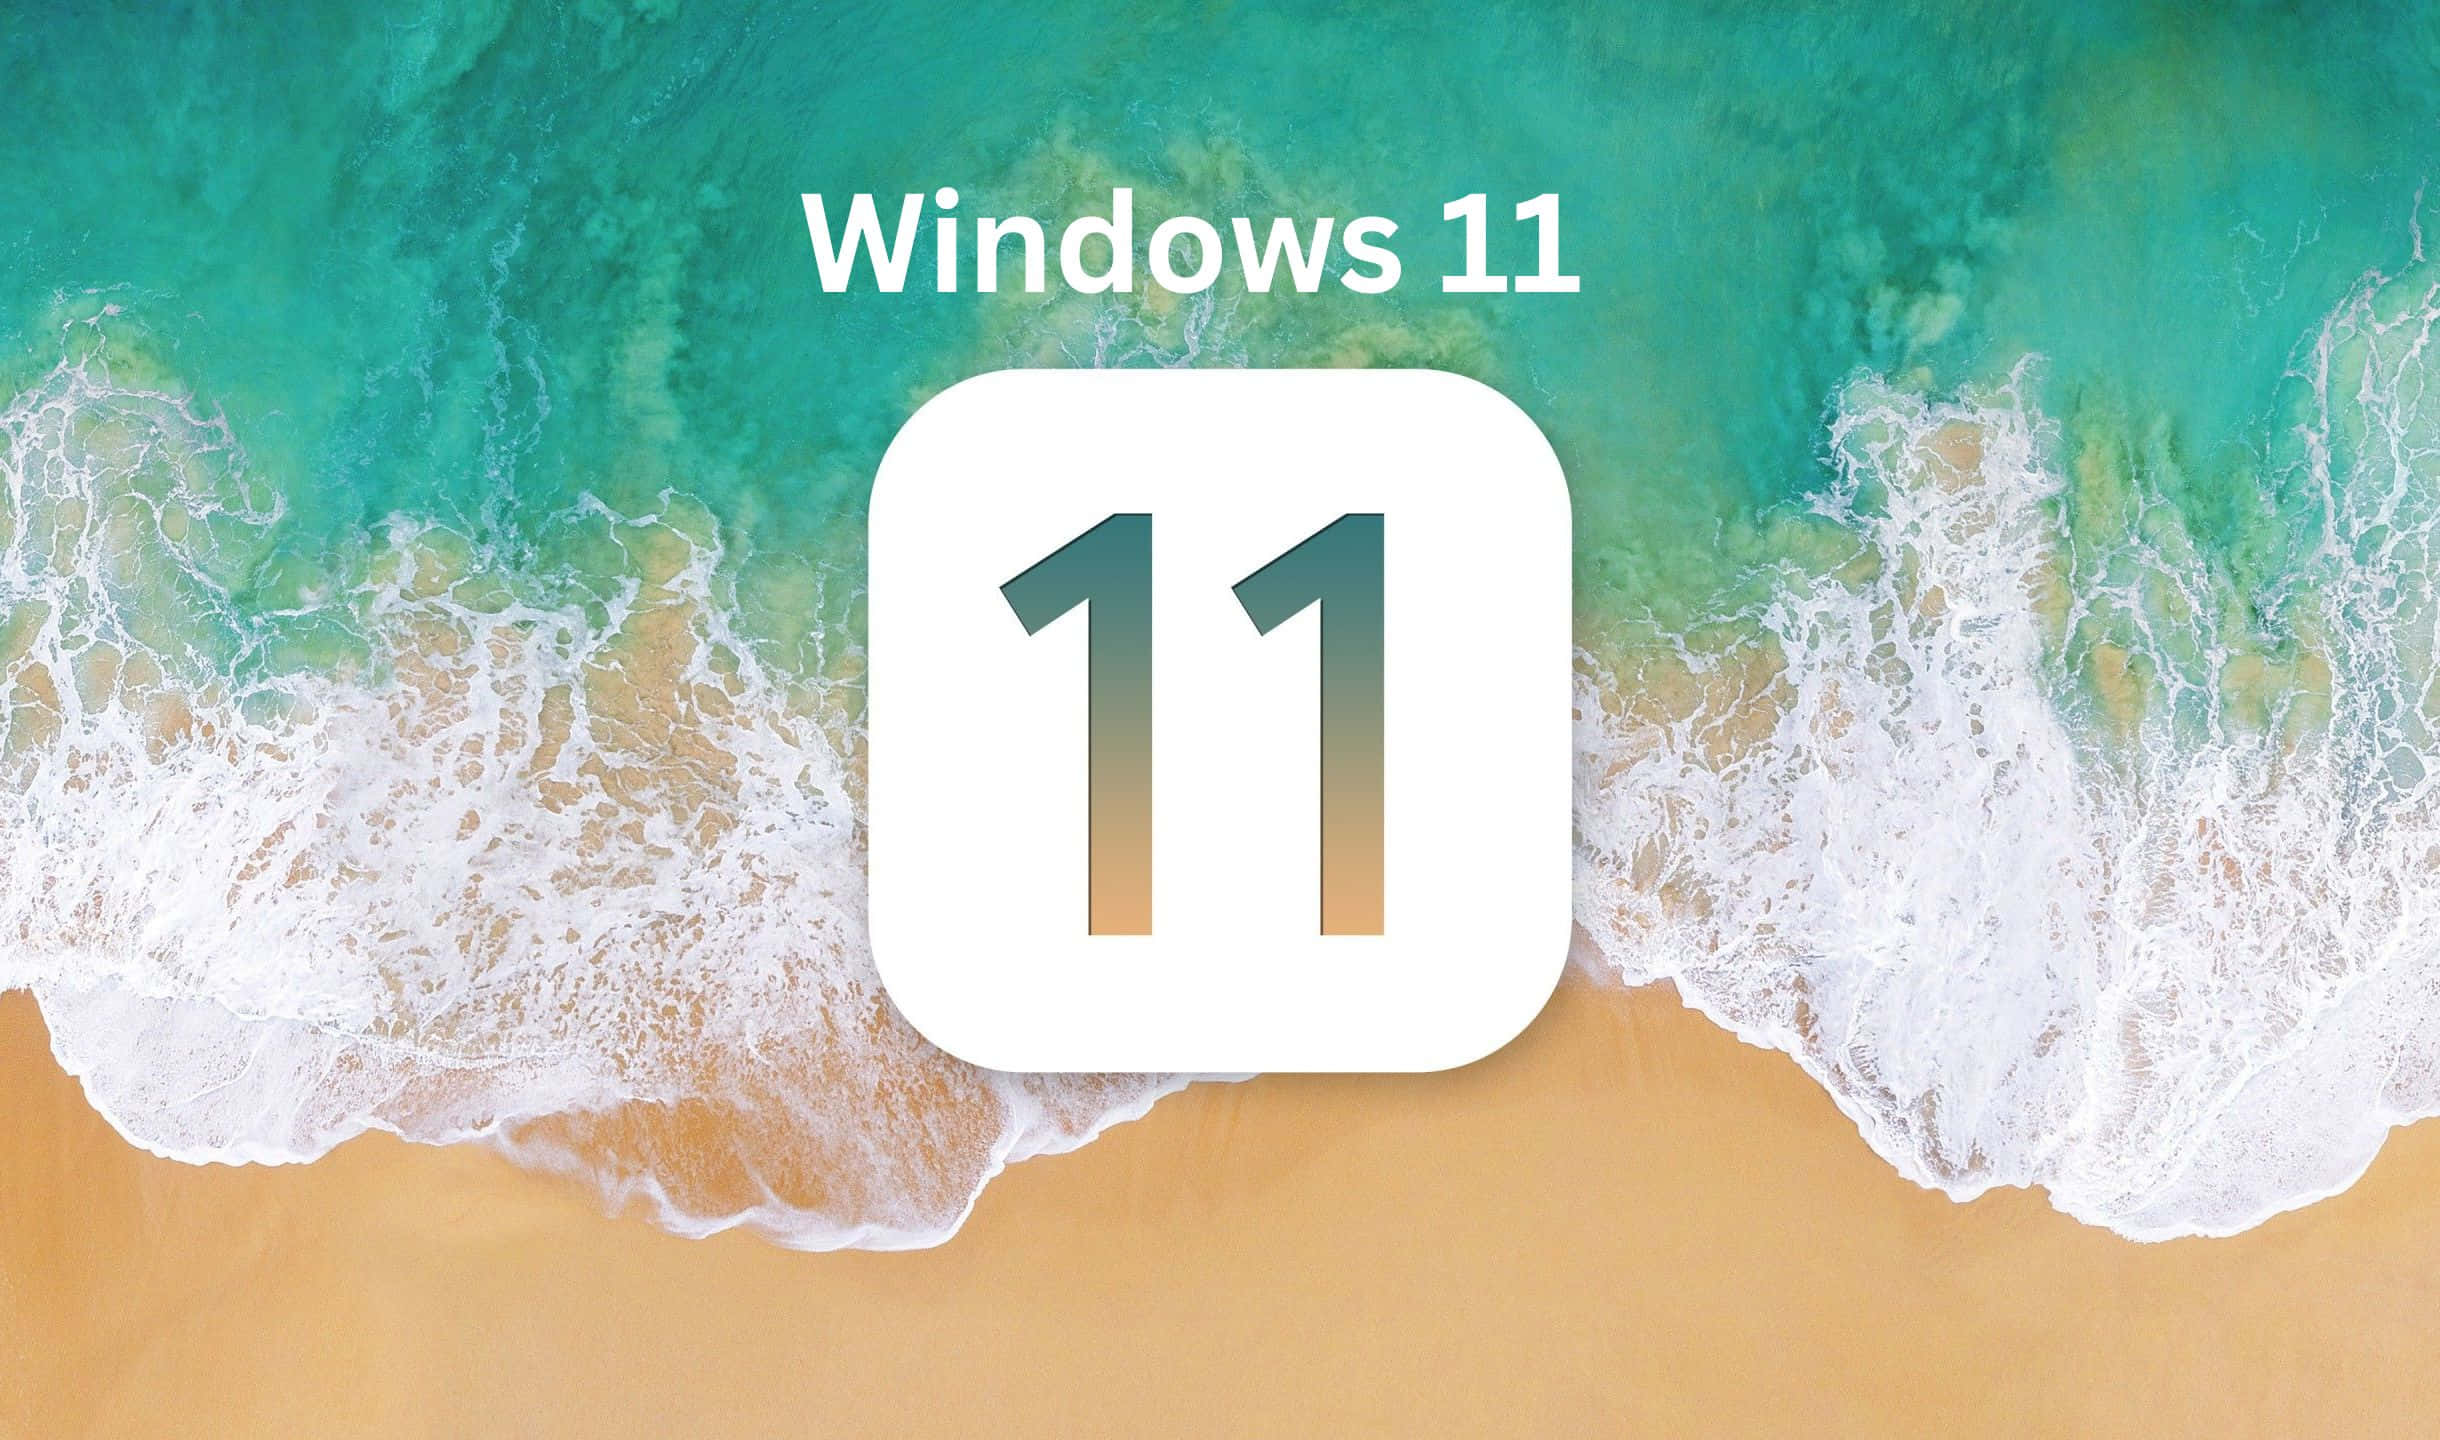 Vorstellungvon Windows 11 - Neugestaltet Für Einfachheit